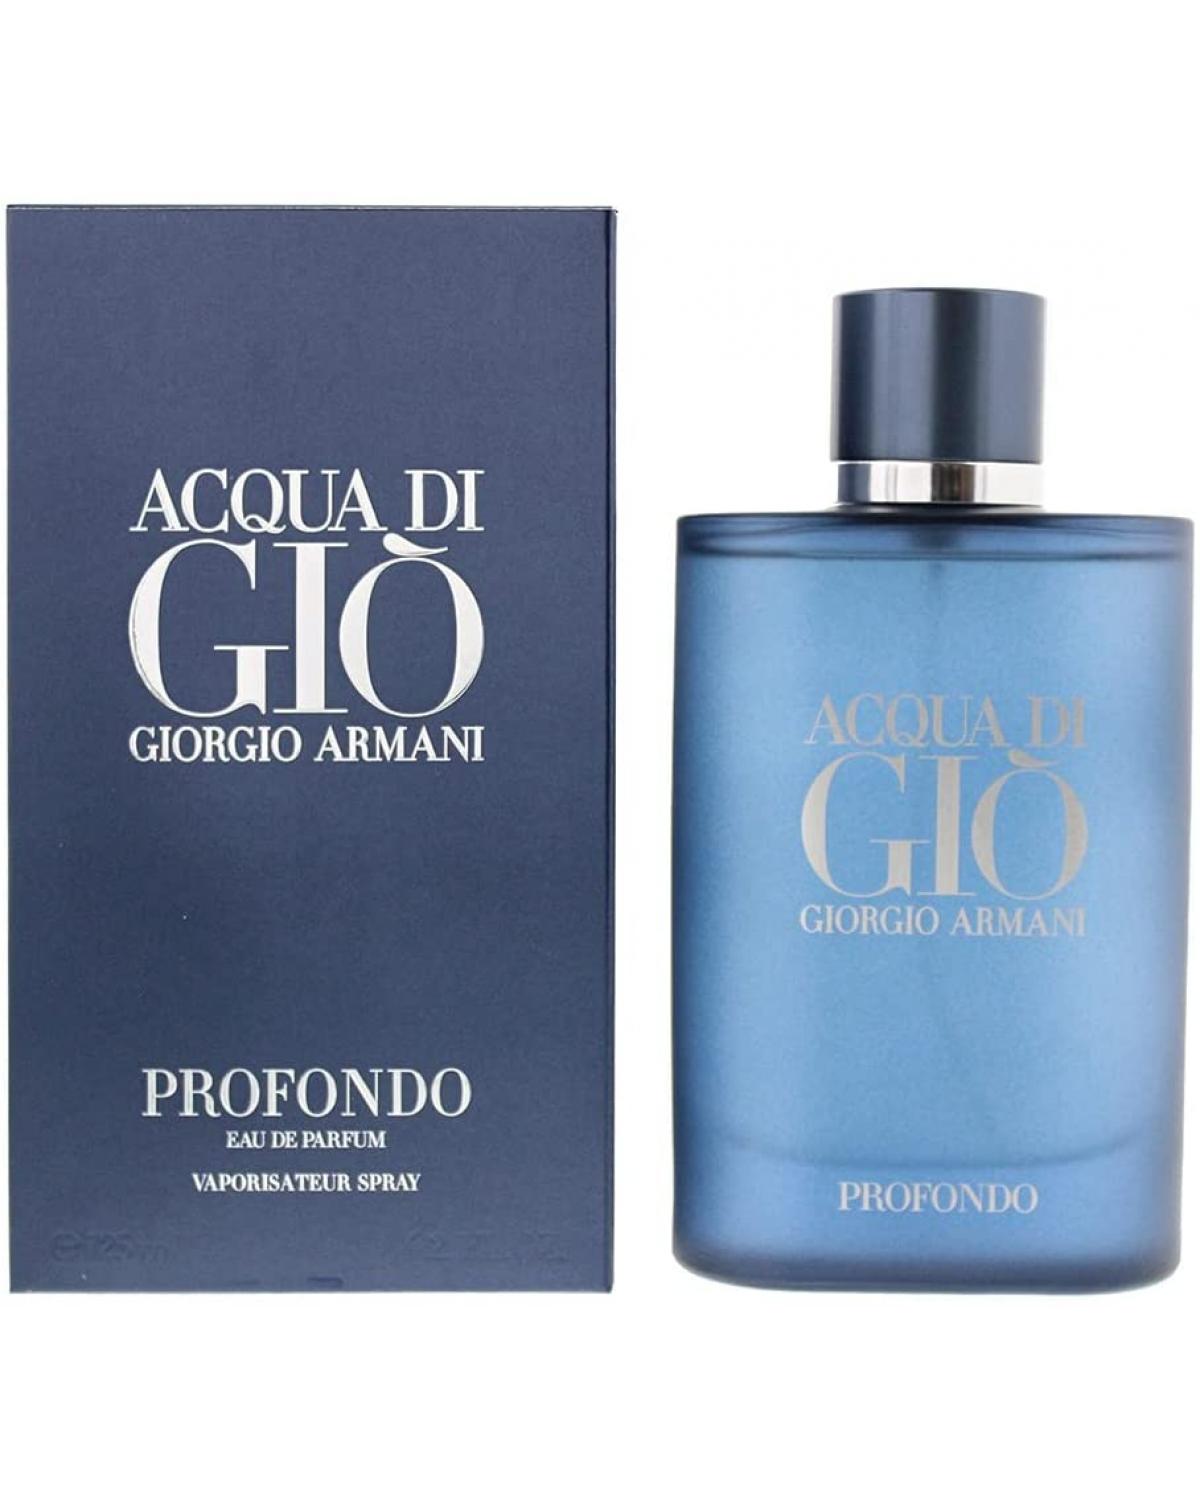 Acqua Di Giò Profondo Giorgio Armani - Perfume Masculino EDP - 125ml